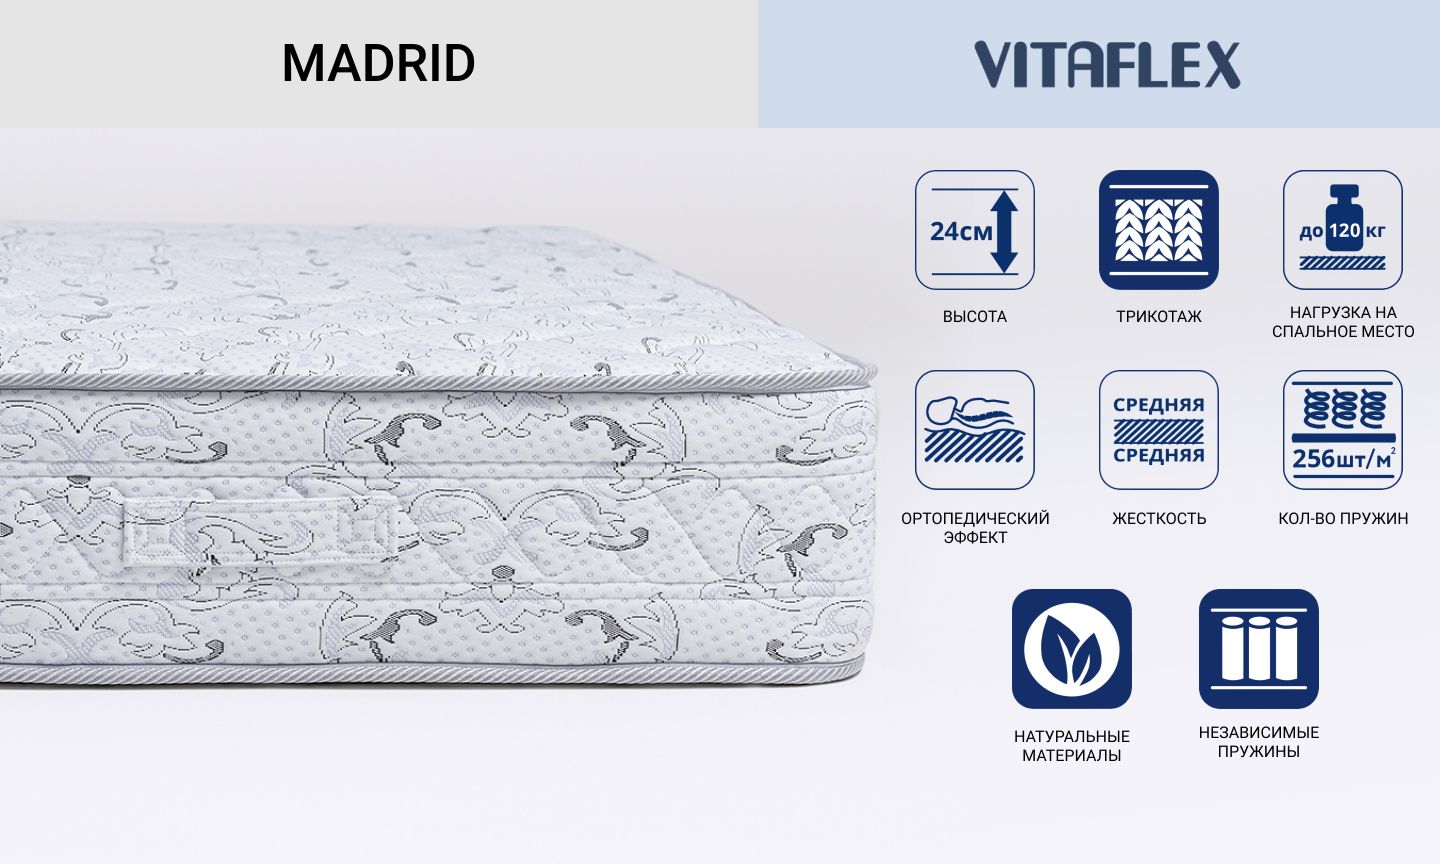 Двухсторонний матрас Vitaflex серии Madrid с независимыми бочкообразными пружинами